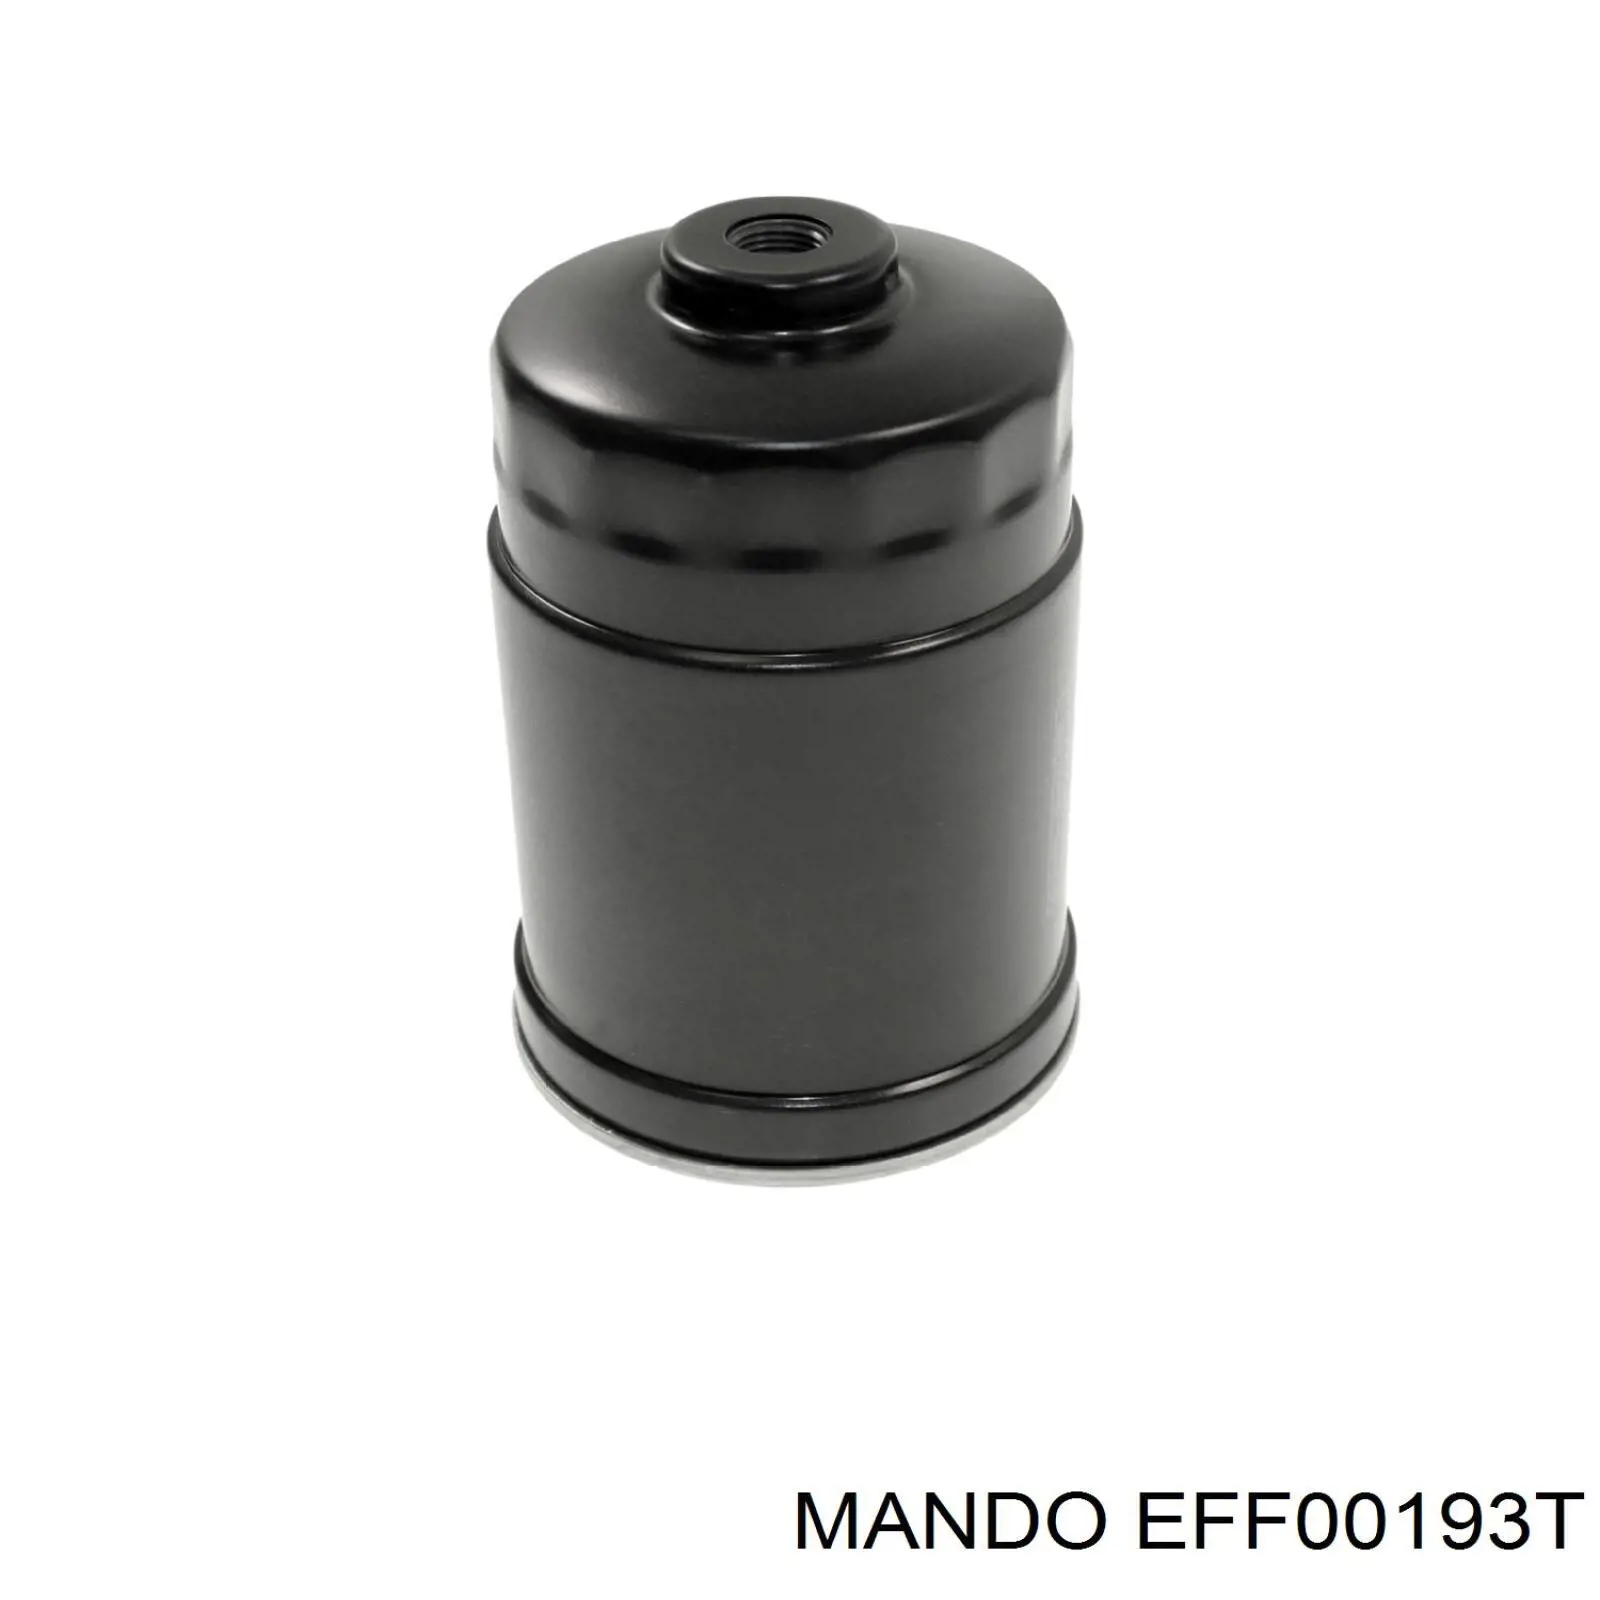 EFF00193T Mando топливный фильтр